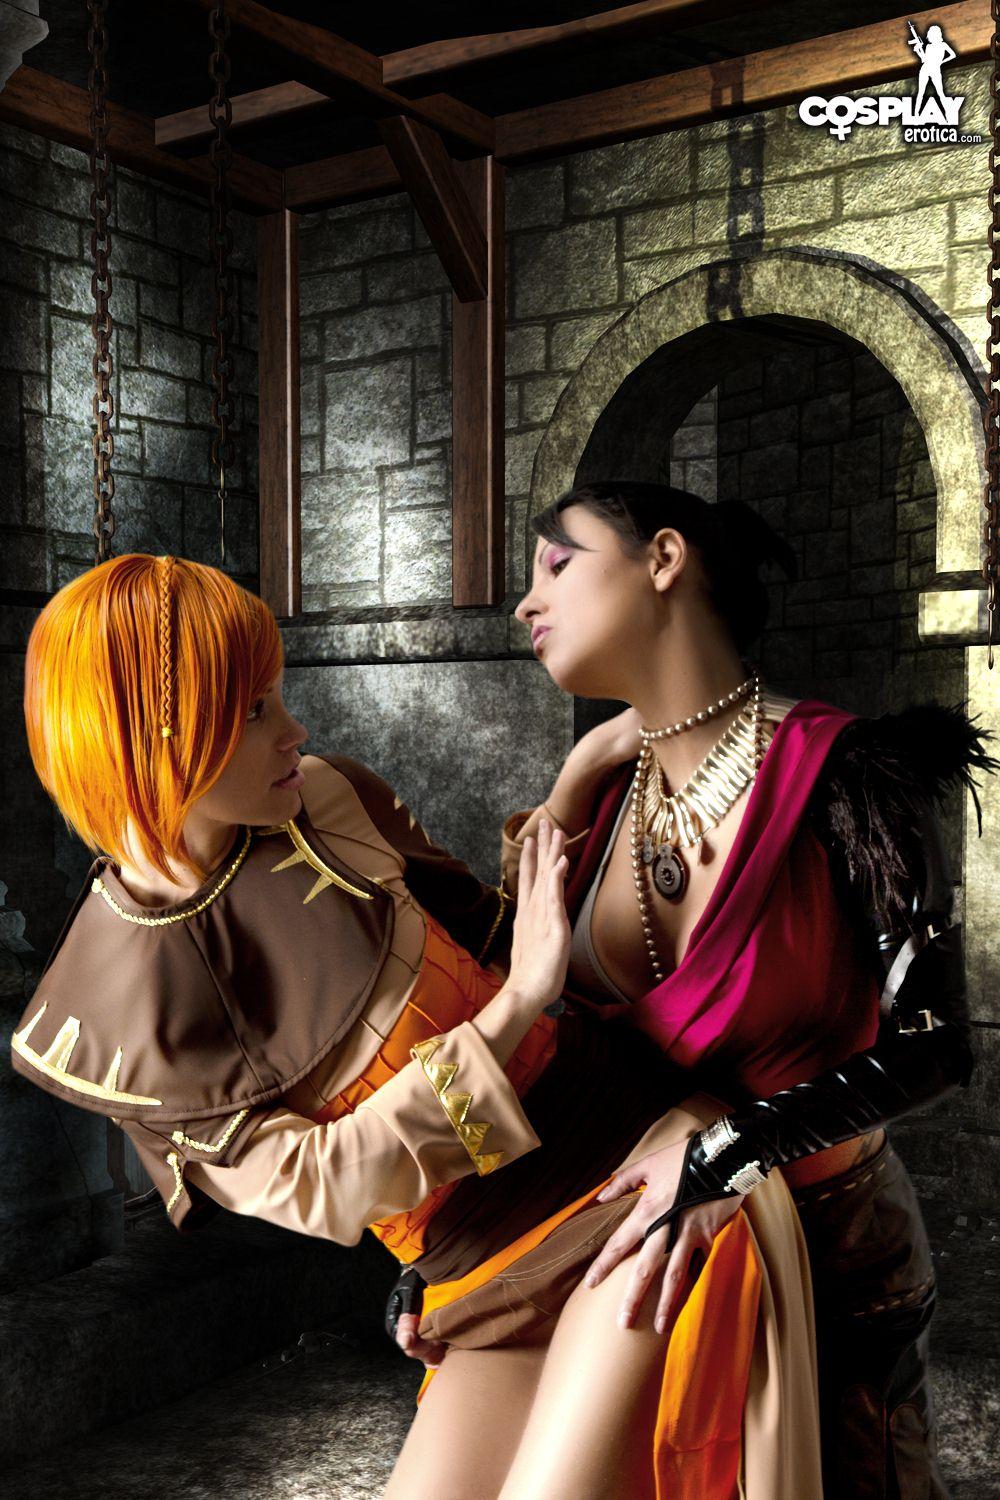 Immagini di nayma e mea facendo un caldo lesbica dragon age cosplay
 #59444481